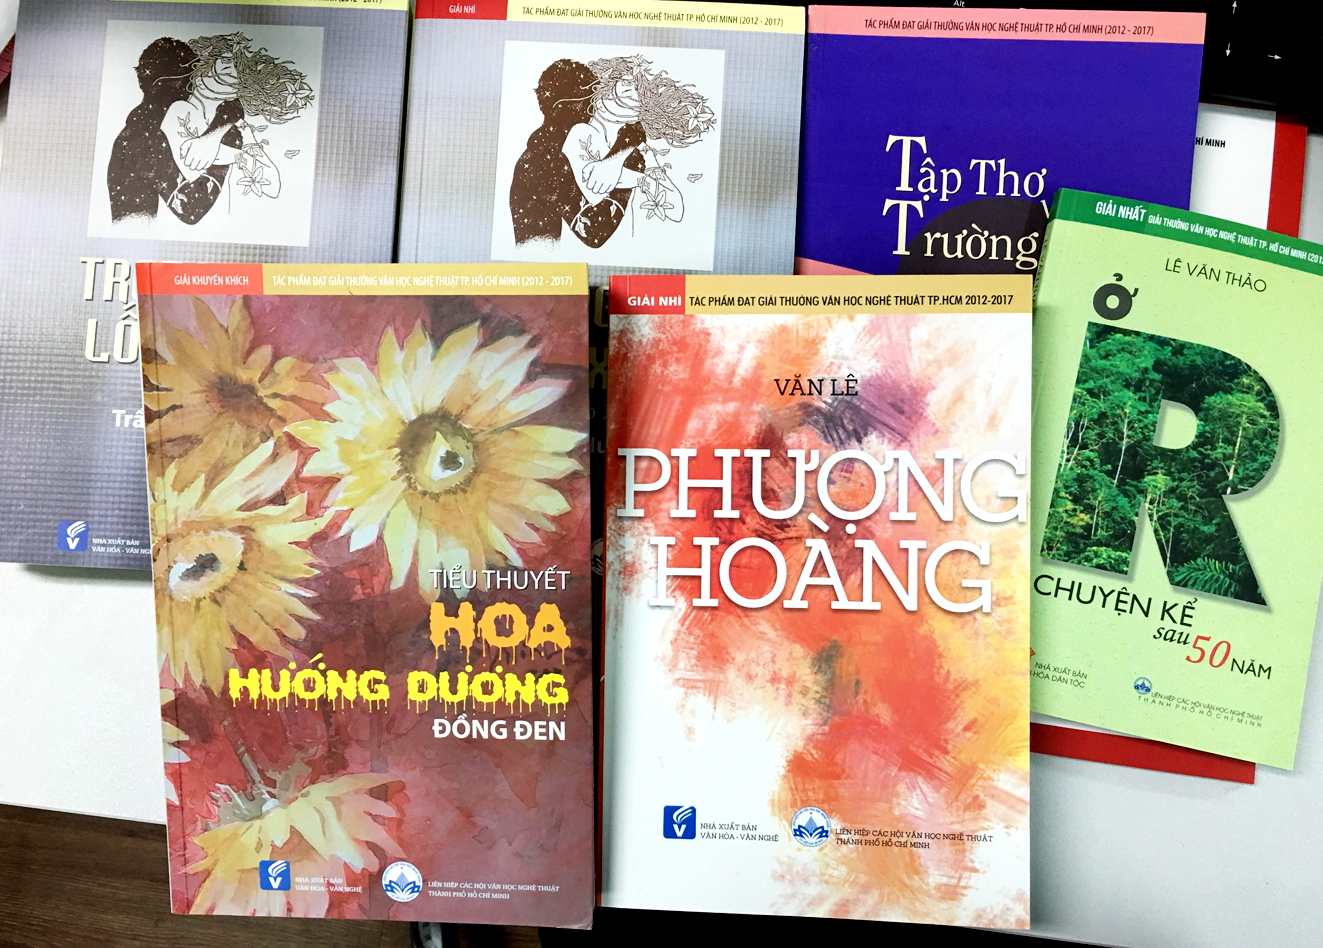 Các tác phẩm được trao Giải thưởng Văn hóa nghệ thuật TP.HCM (2012-2017) đều là sách không bán